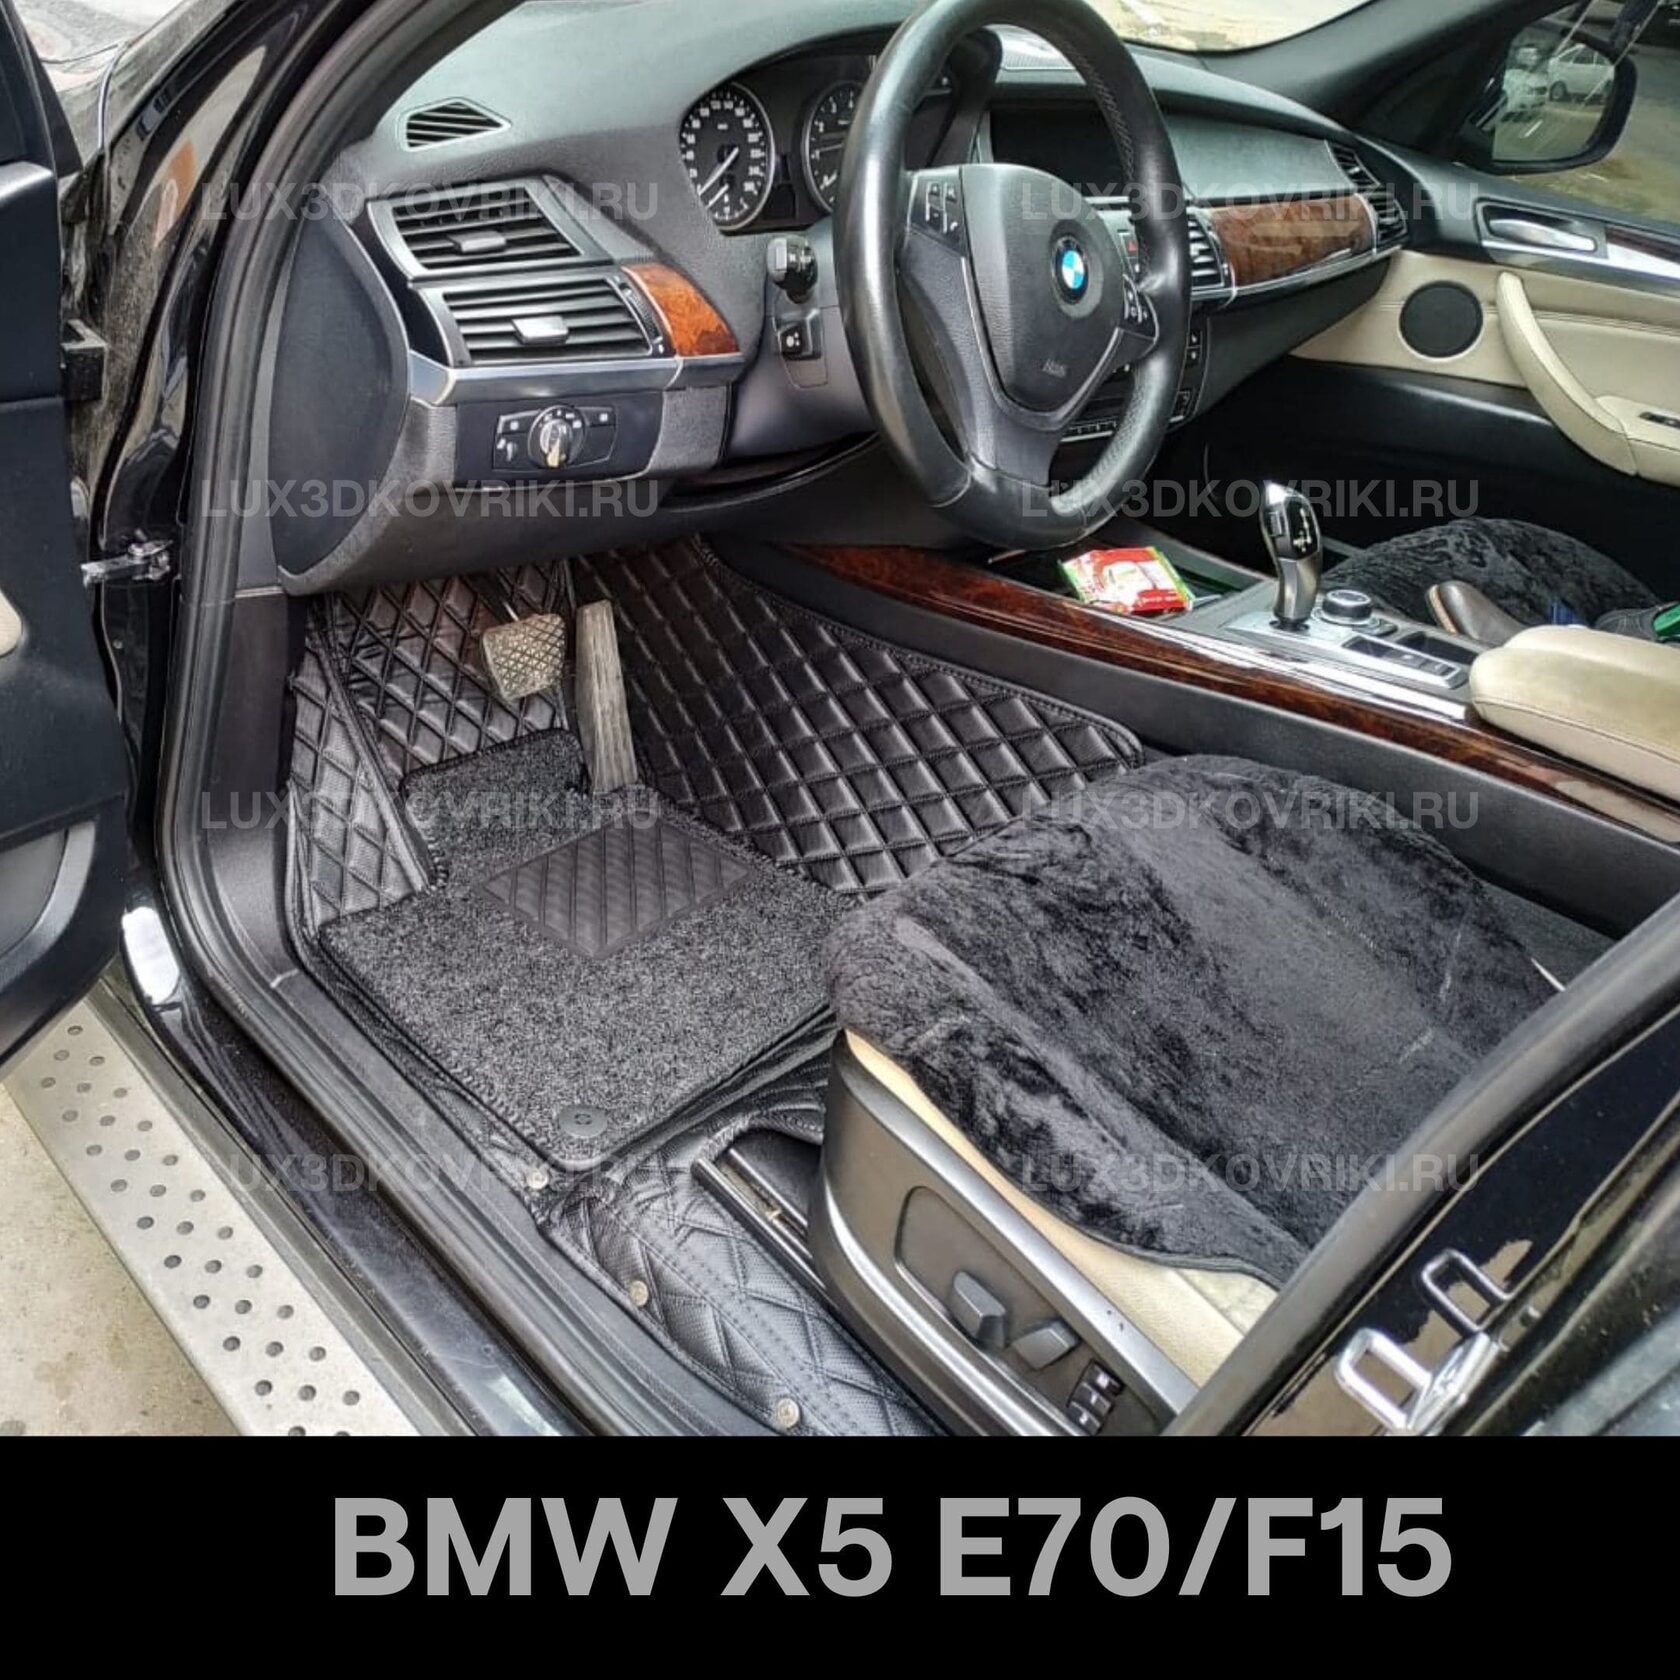 Коврик bmw x5. 5d коврики x5 e70. 3d коврики BMW x5 e70. Коврики 3d БМВ е70 в салон х5. 5d коврики из экокожи в BMW e39.